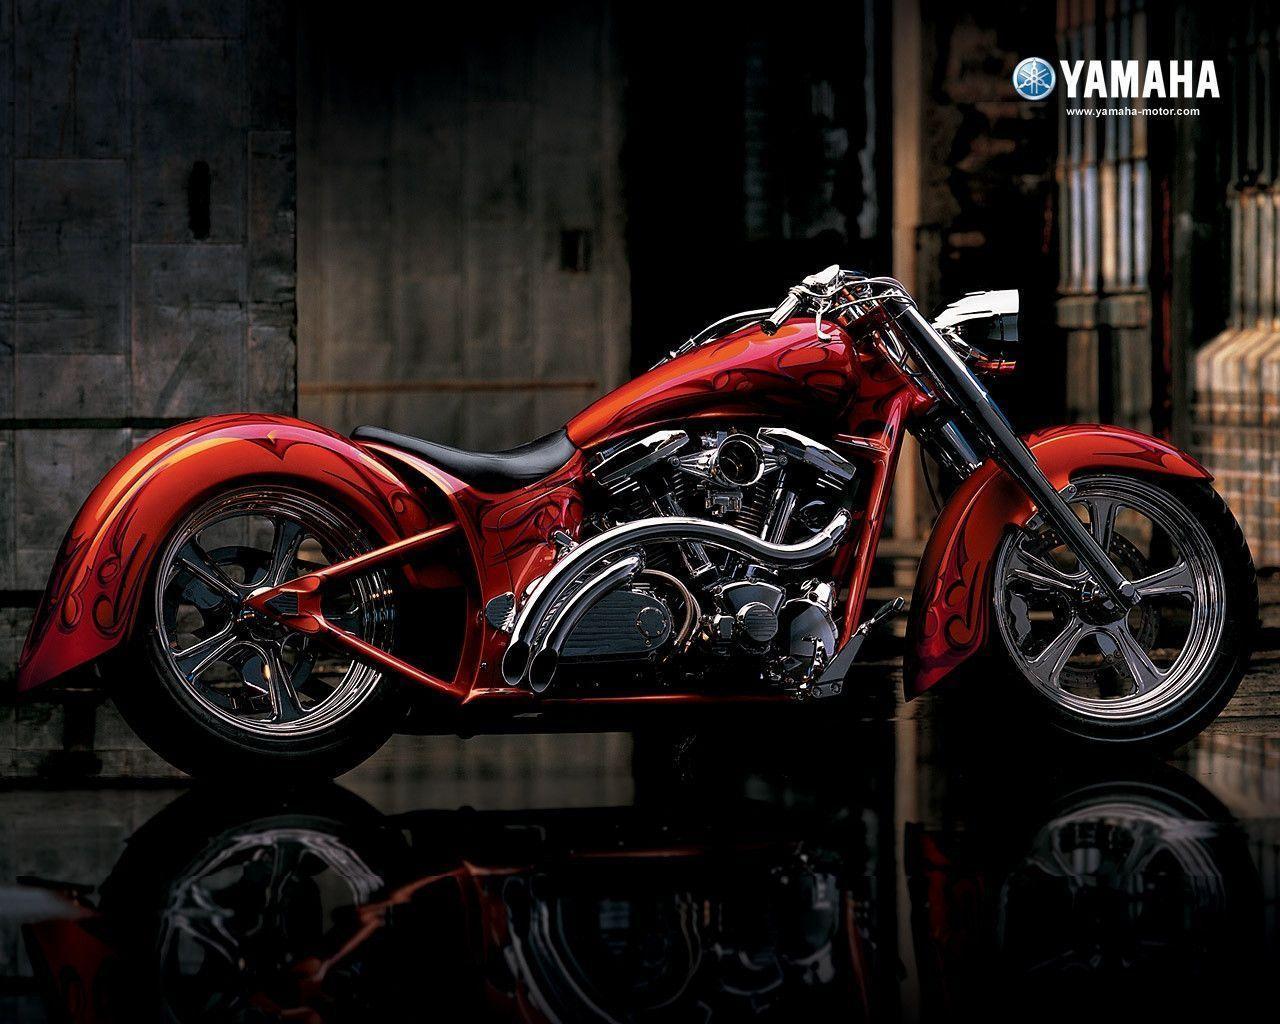 Yamaha Chopper Wallpaper